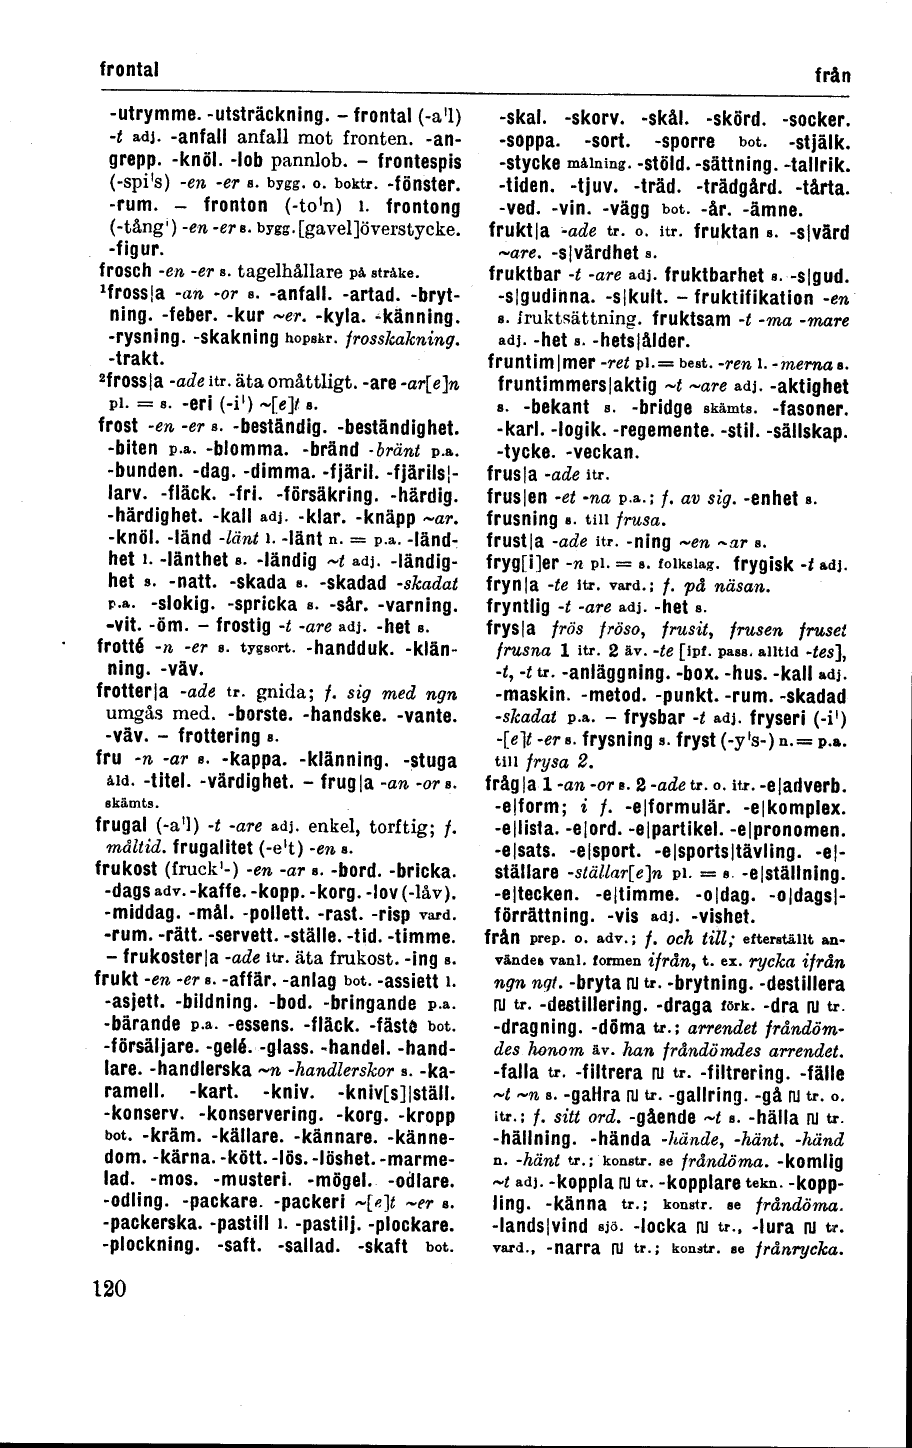 120 (Svenska Akademiens ordlista / Nionde upplagan, femte tryckningen  (1954))